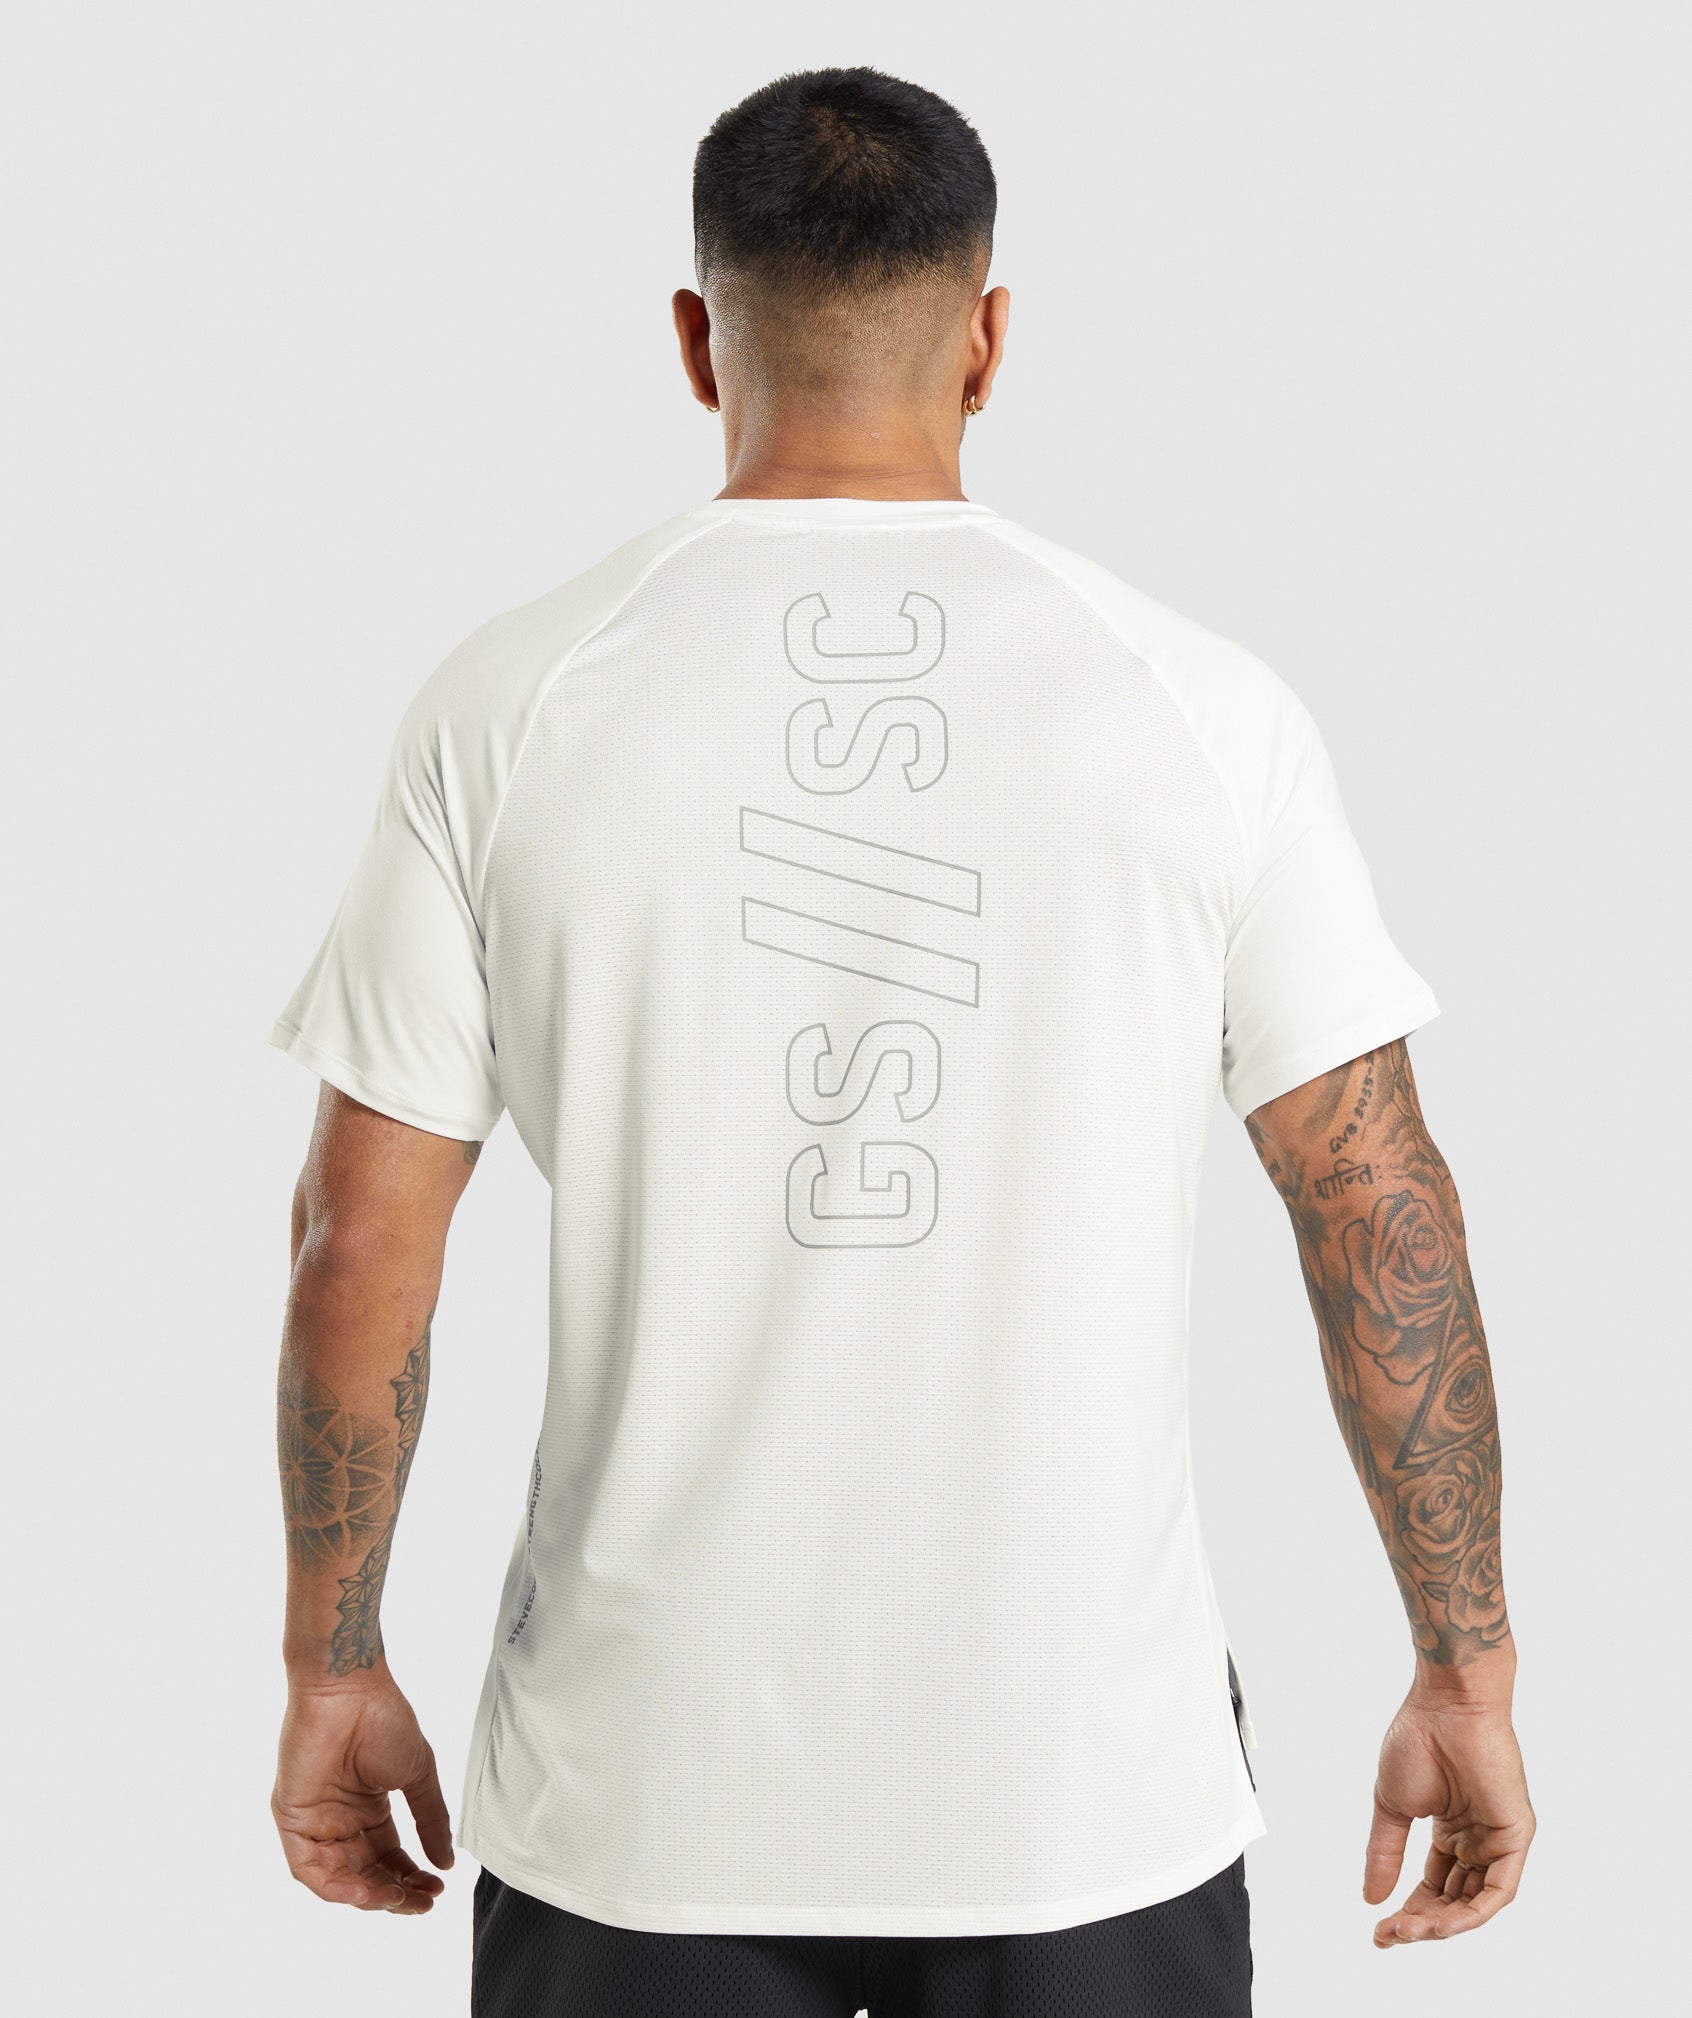 Gymshark//Steve Cook T-Shirt in Off White